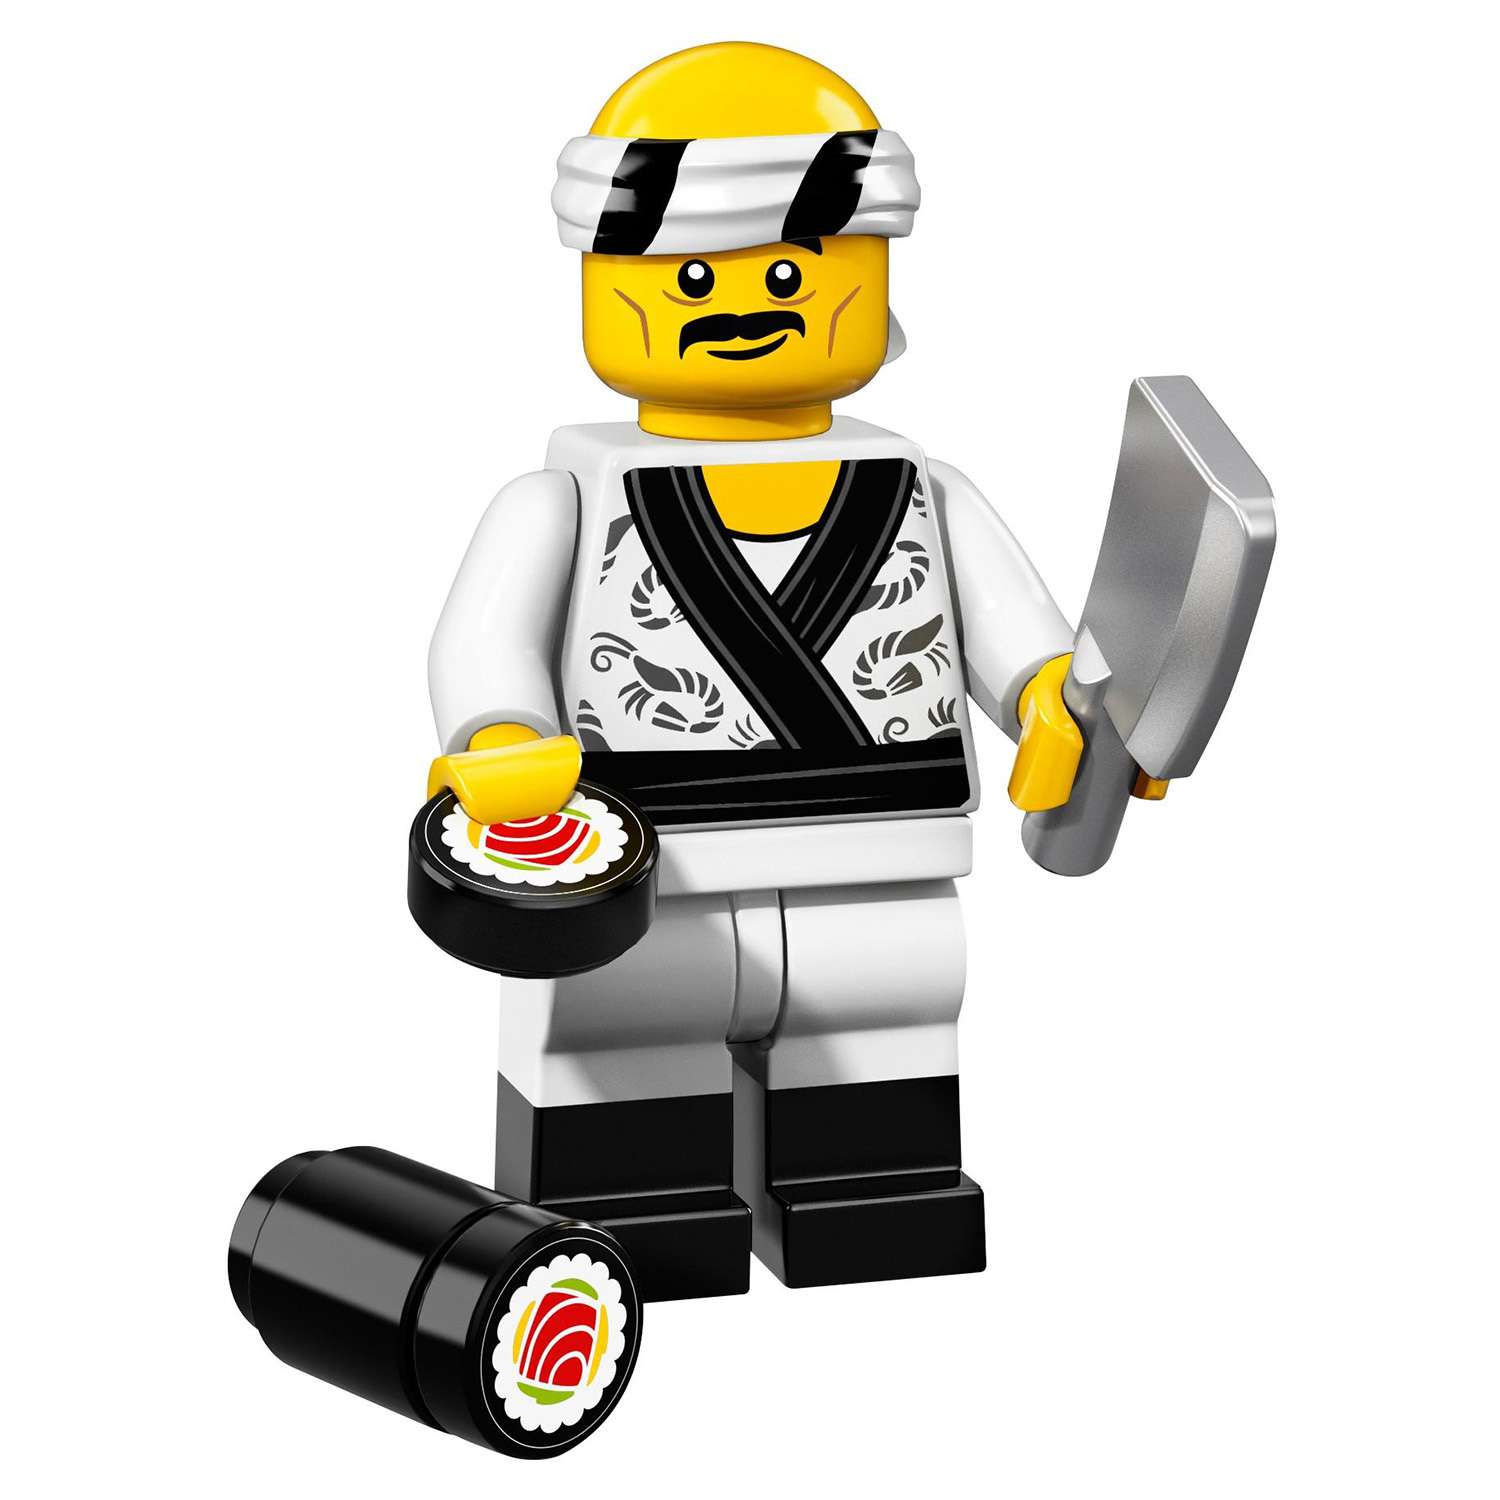 Конструктор LEGO Minifigures Минифигурки ФИЛЬМ: НИНДЗЯГО (71019) в ассортименте - фото 32